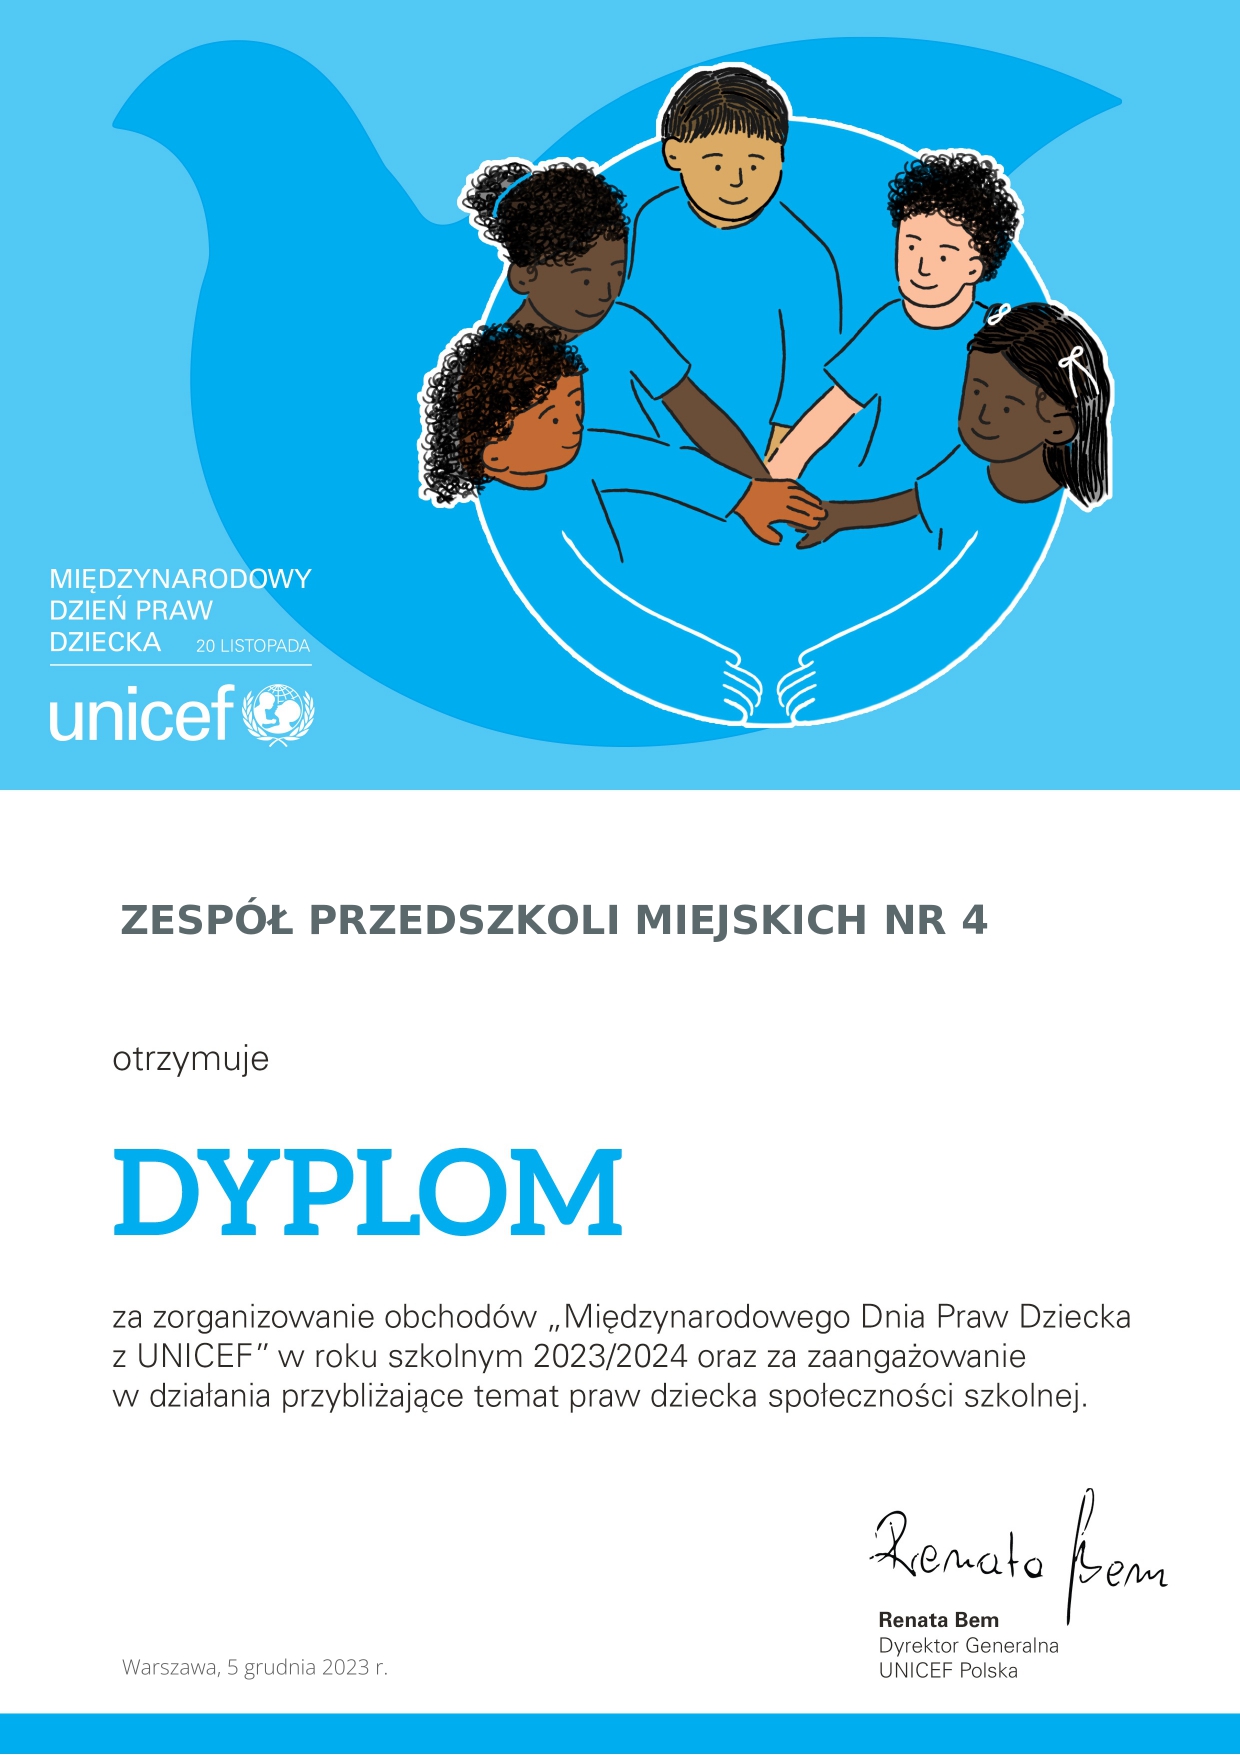 Dyplom uvzestnictwa w akcji Międzynarodowy Dzień Praw Dziecka z Unicef -Grafika w kolorze niebieskim przedstawiająca grupę dzieci 